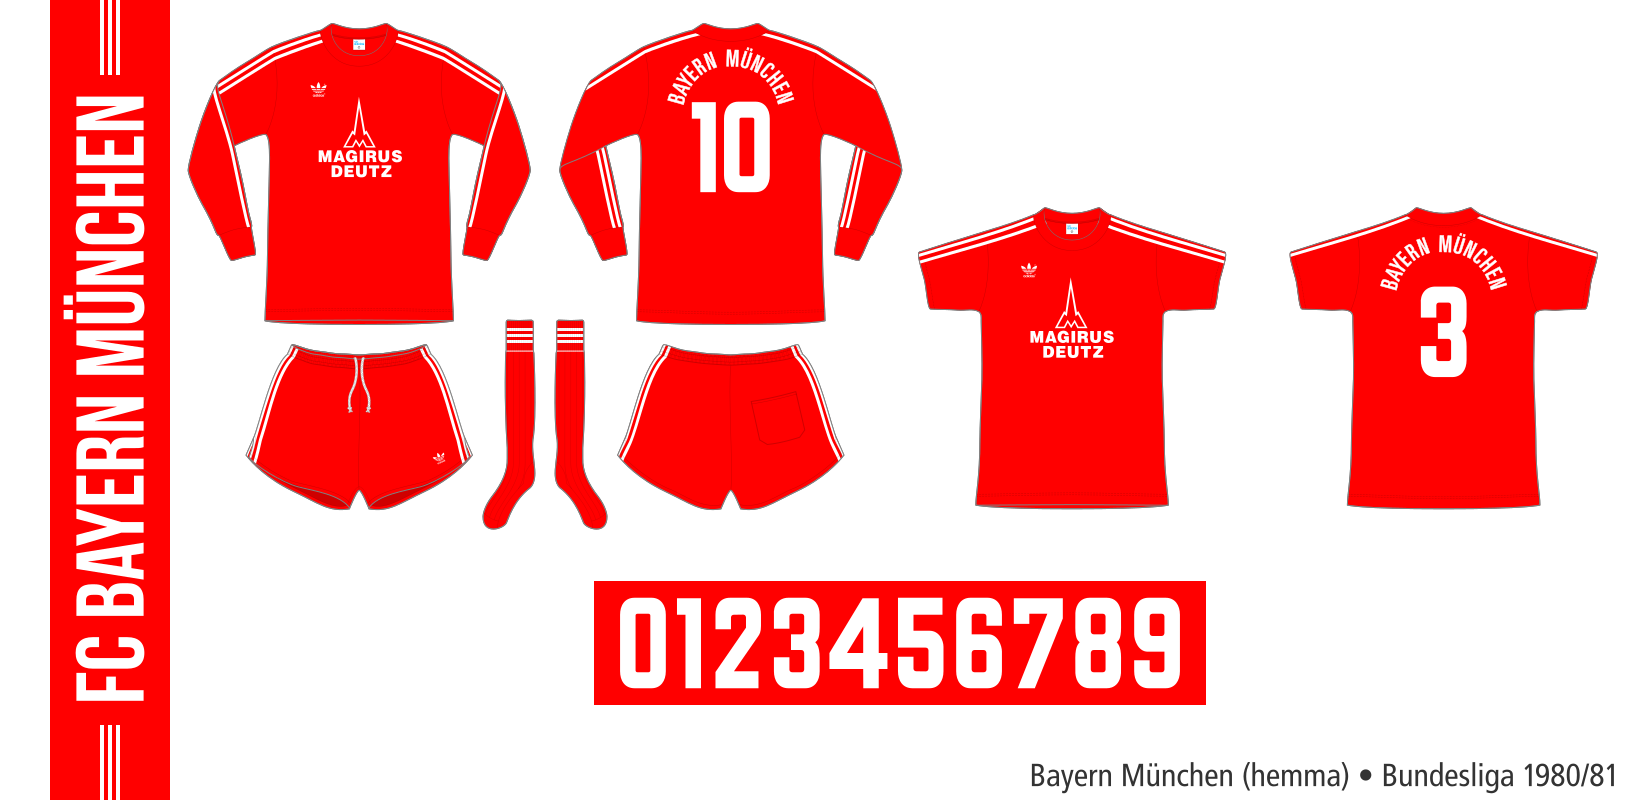 Bayern München 1980/81 (hemma)